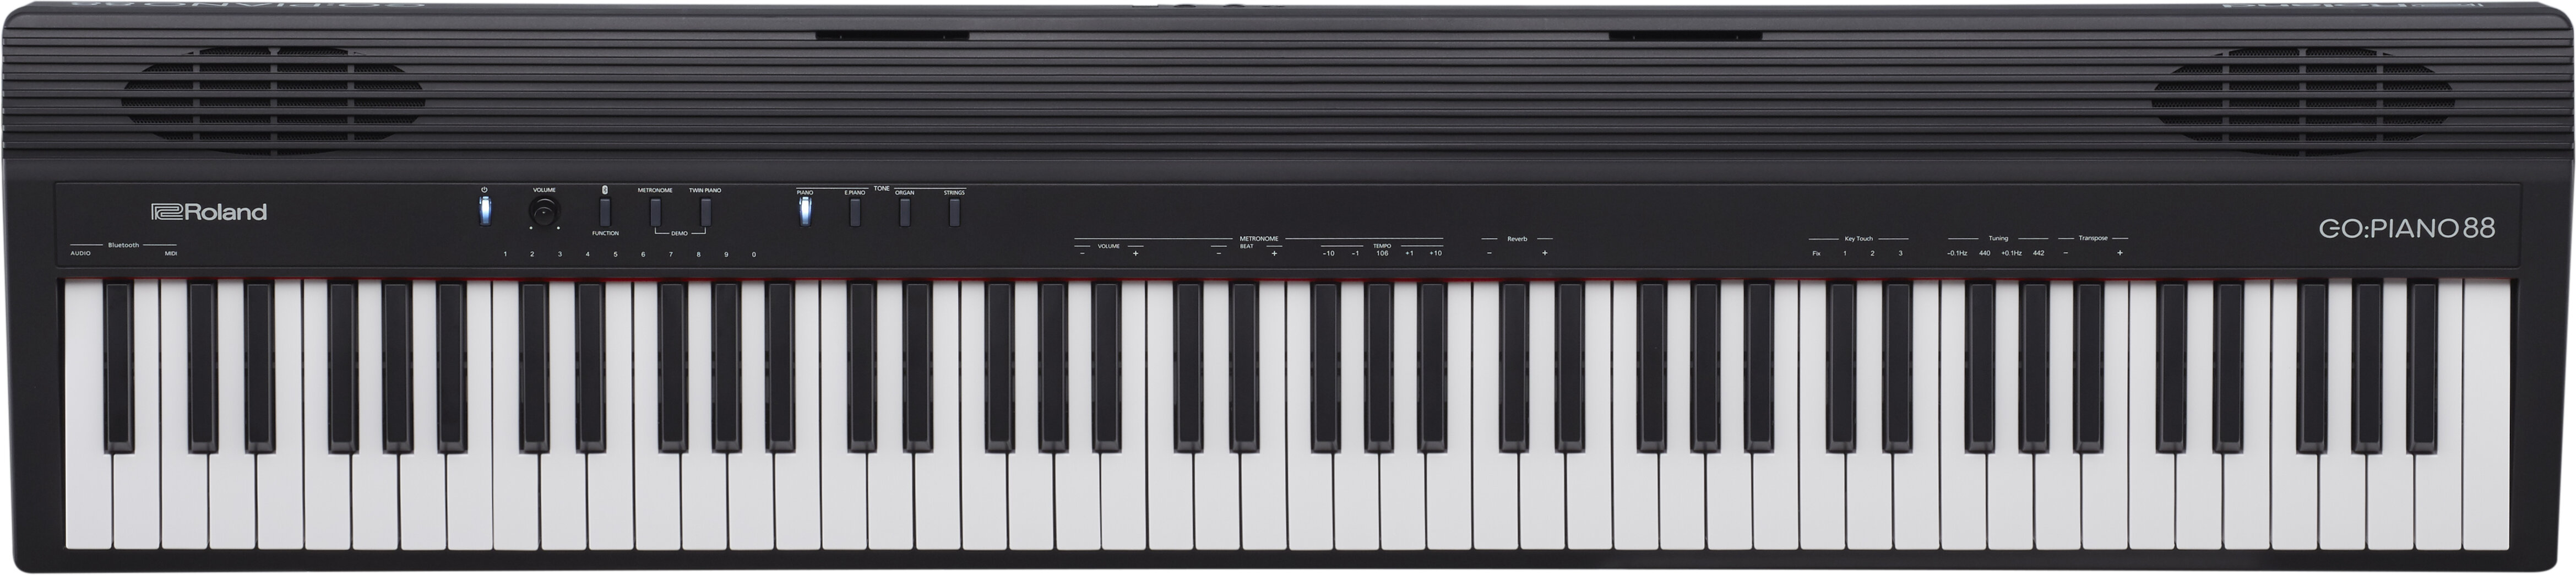 Roland Go Piano 88 88 Key Personal Digital Piano -  GO-88P